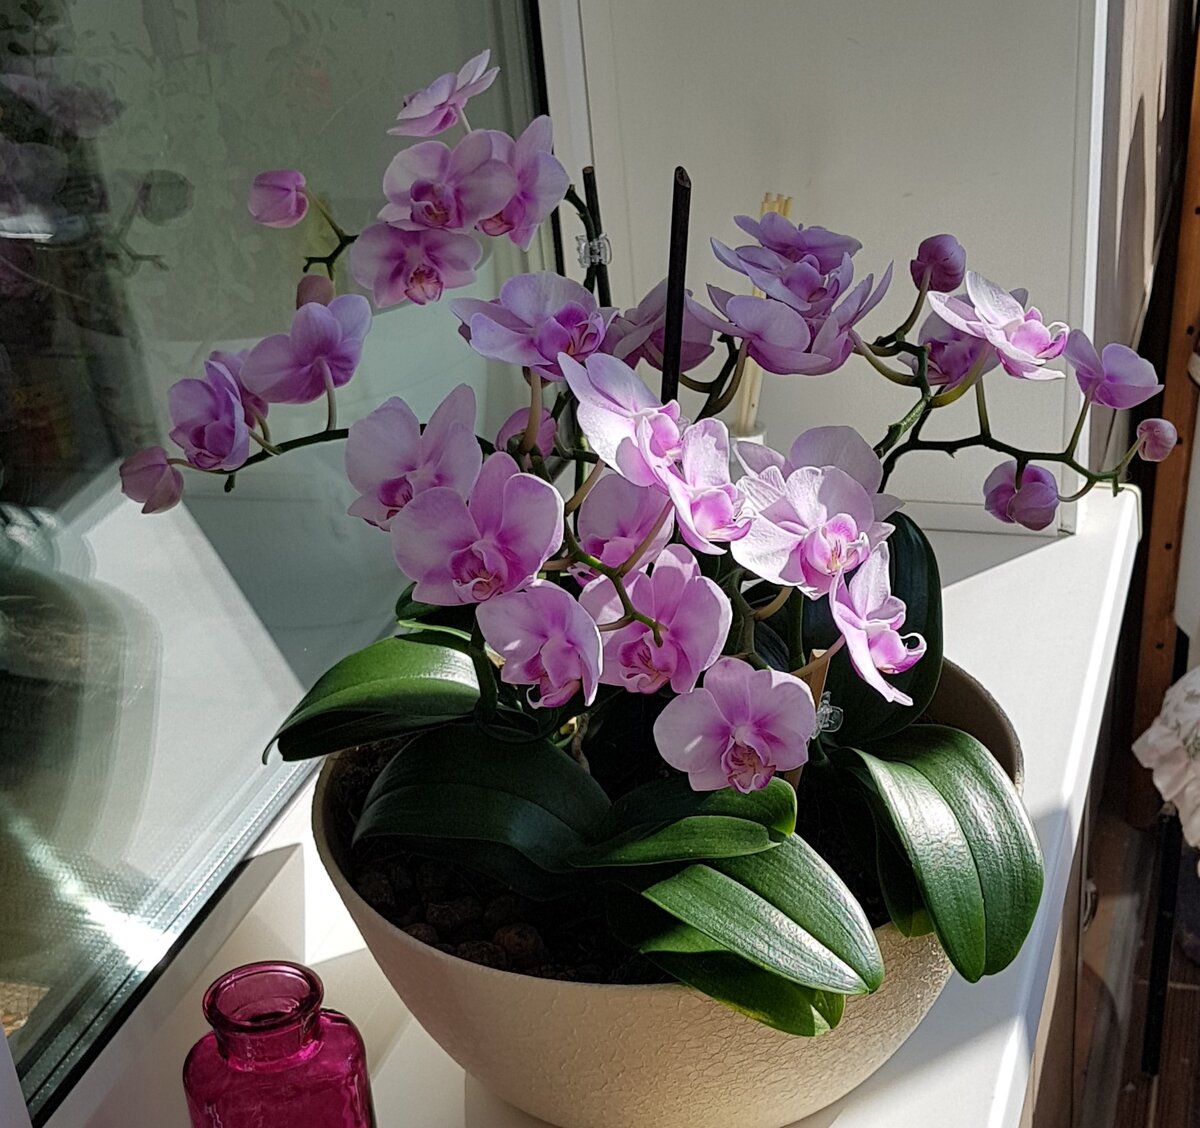 Орхидеи в непрозрачных горшках можно ли